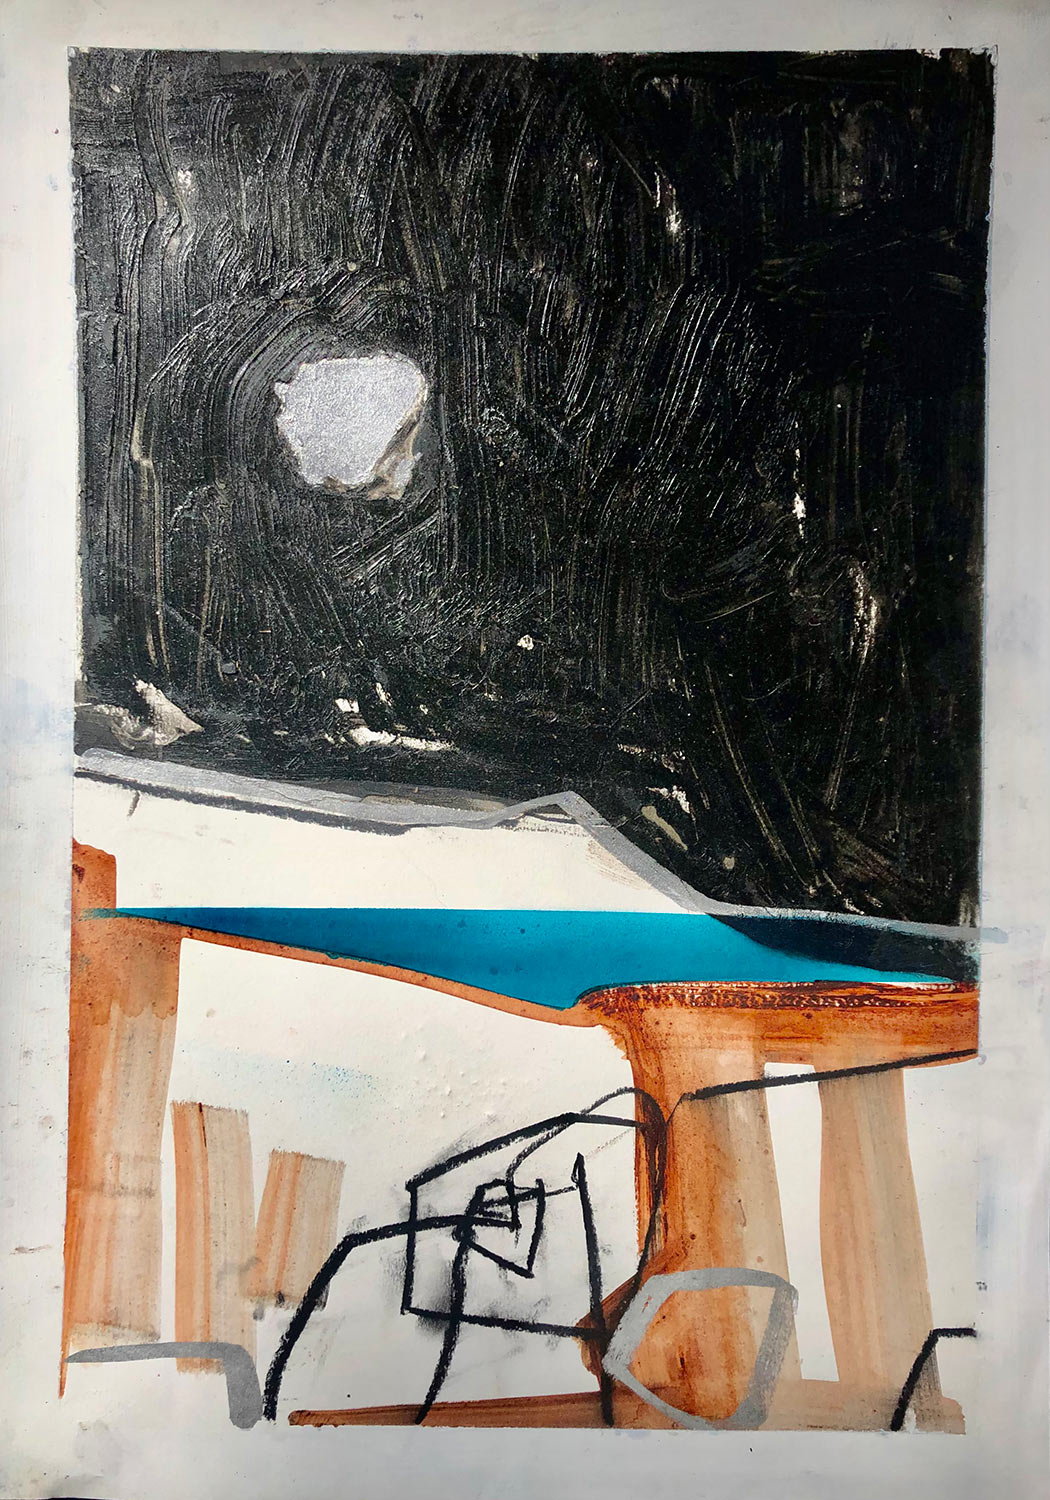 Anthony-Garratt-Moonlit-walk-study-40x29cm-mixed-media-on-paper